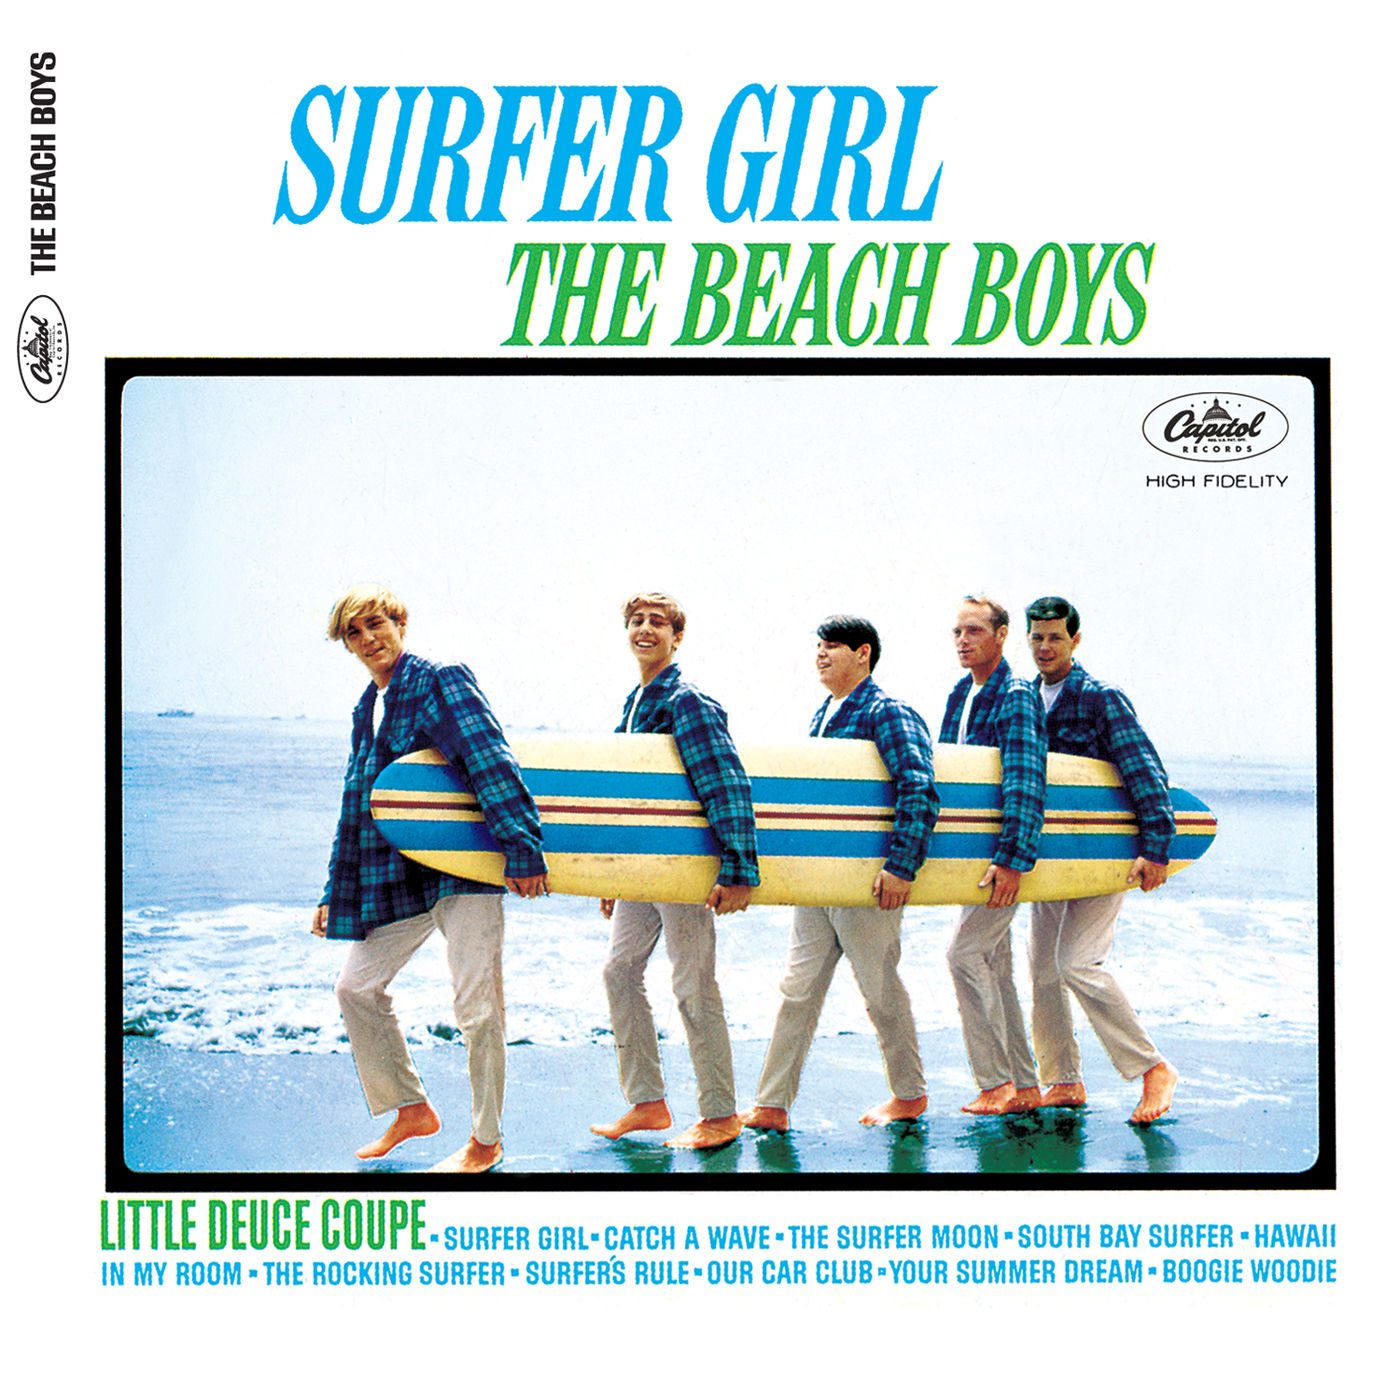 The Beach Boys – Surfer Girl (Mono Version) (Mono)【192kHz／24bit】意大利区-OppsUpro音乐帝国